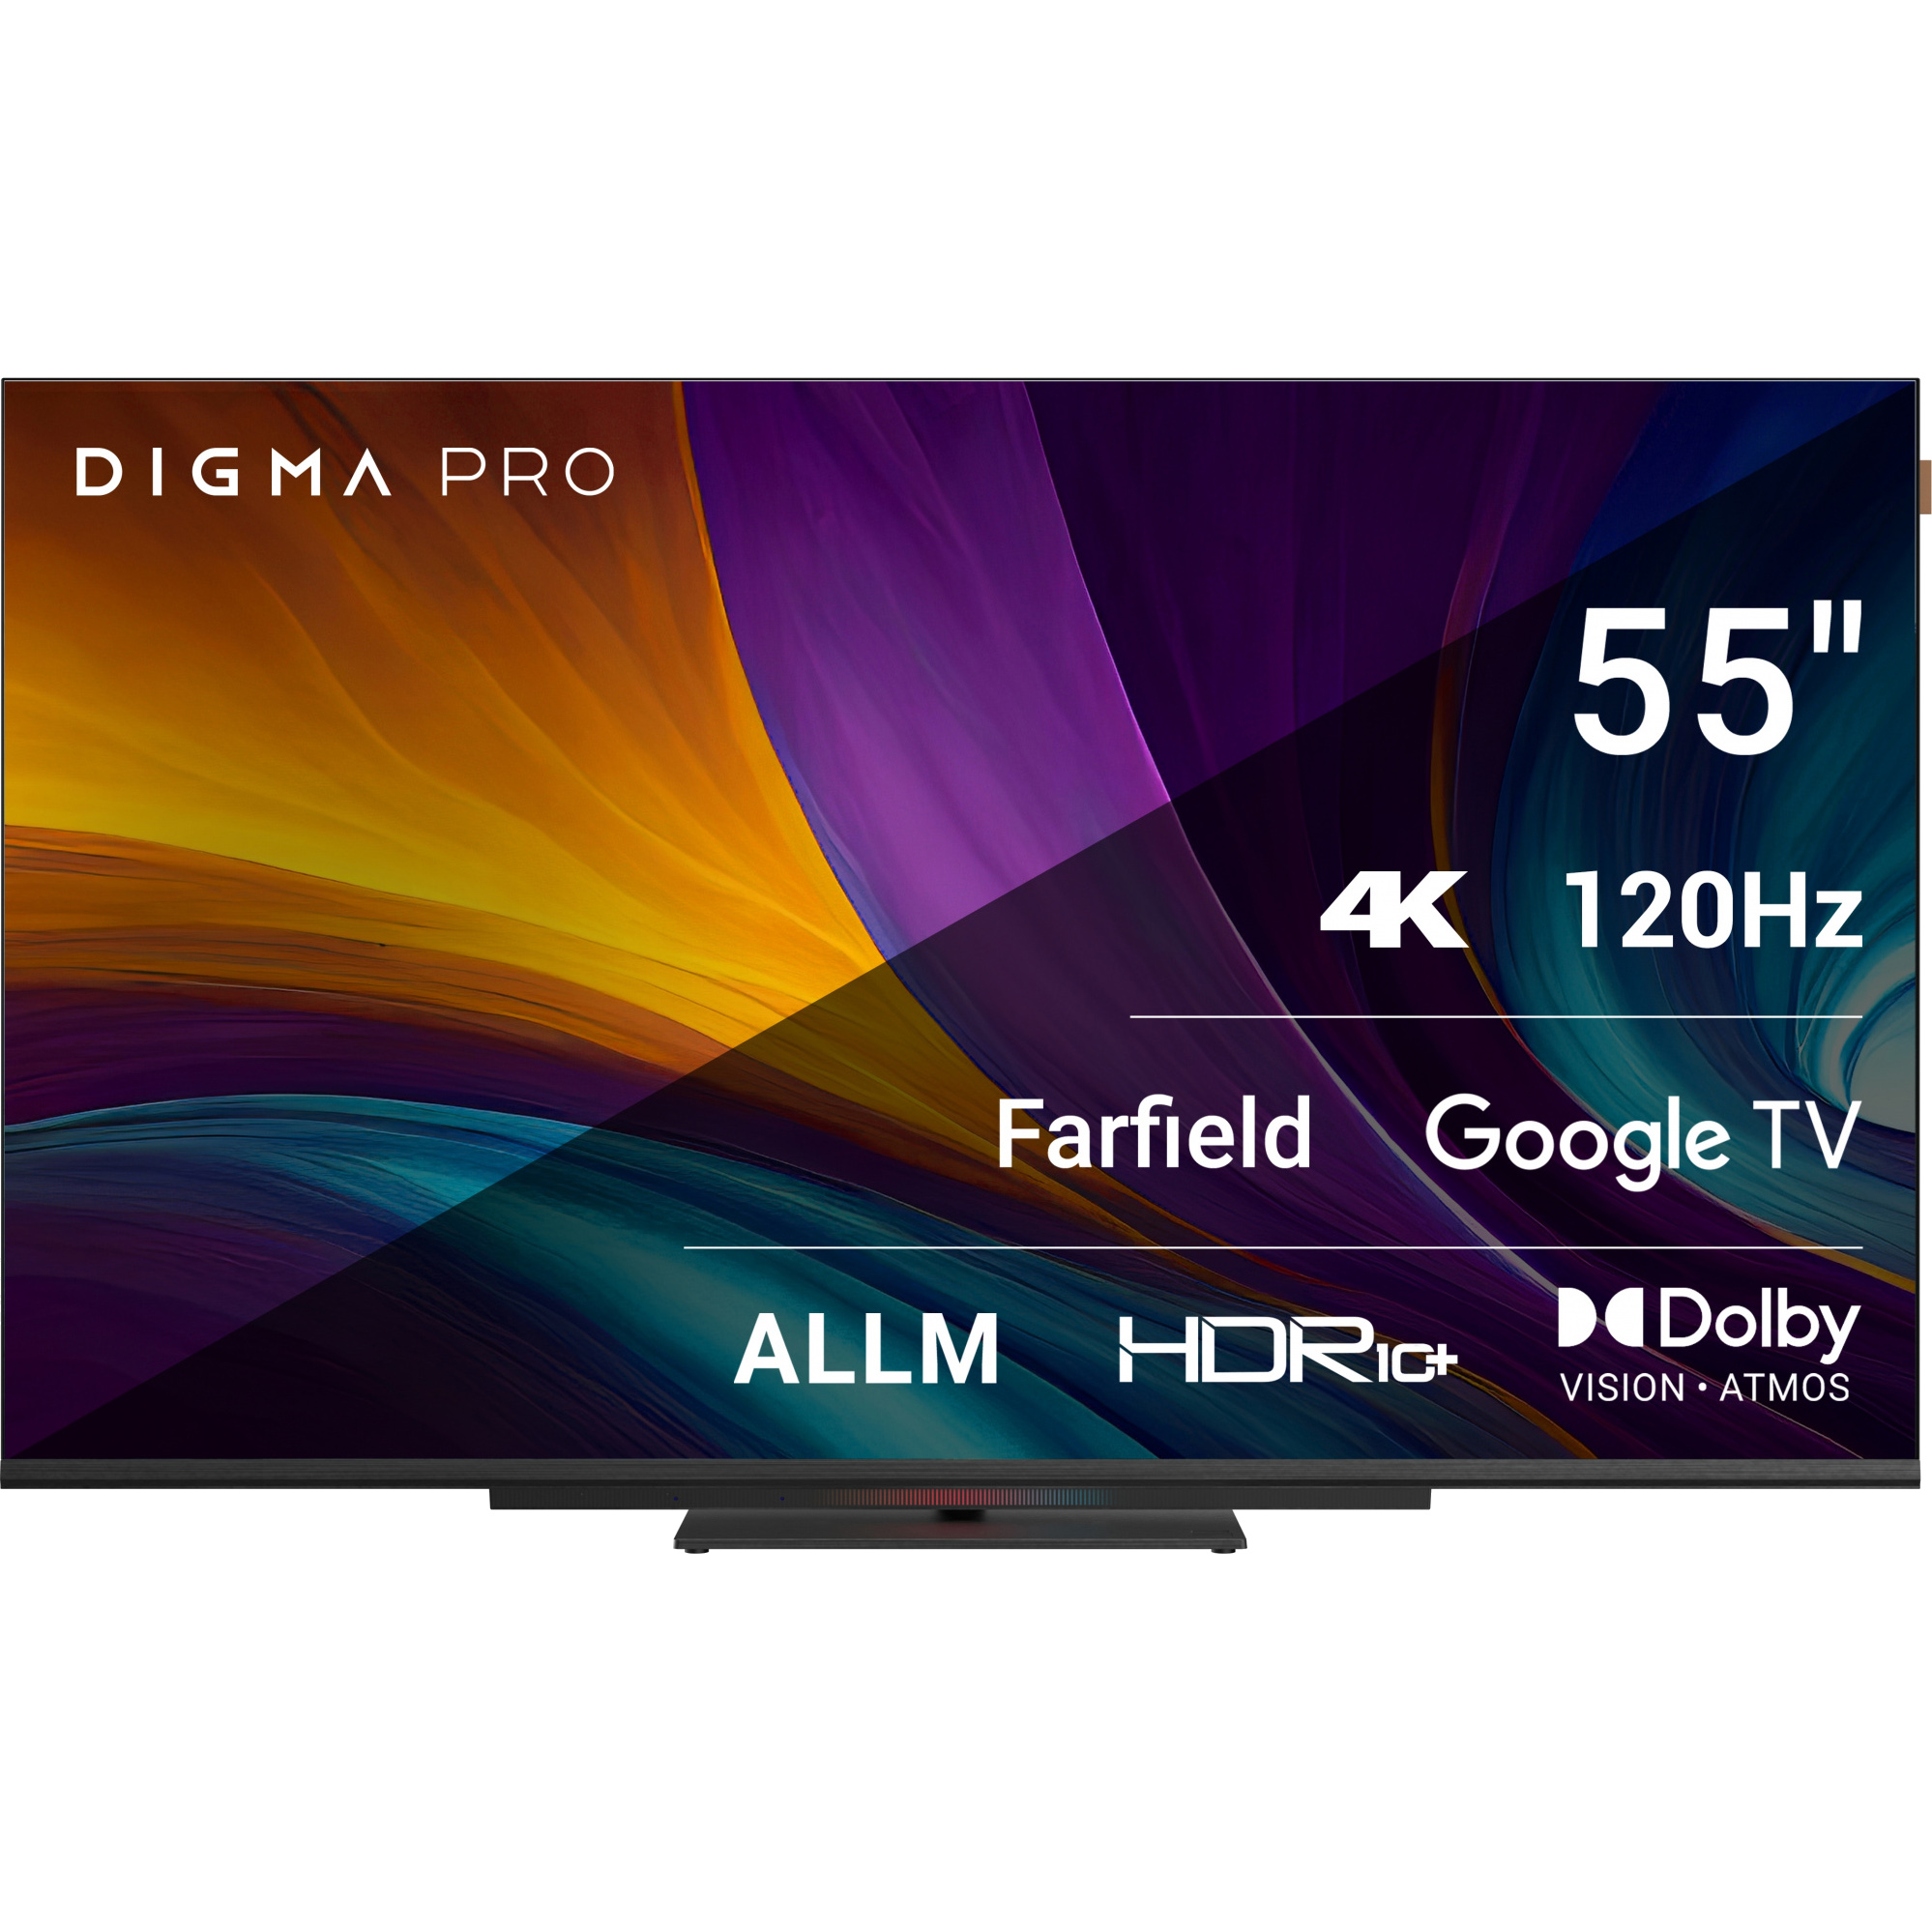 телевизор digma pro google tv uhd 55c 55 led 4k ultra hd google tv черный Телевизор Digma Pro 55 55С